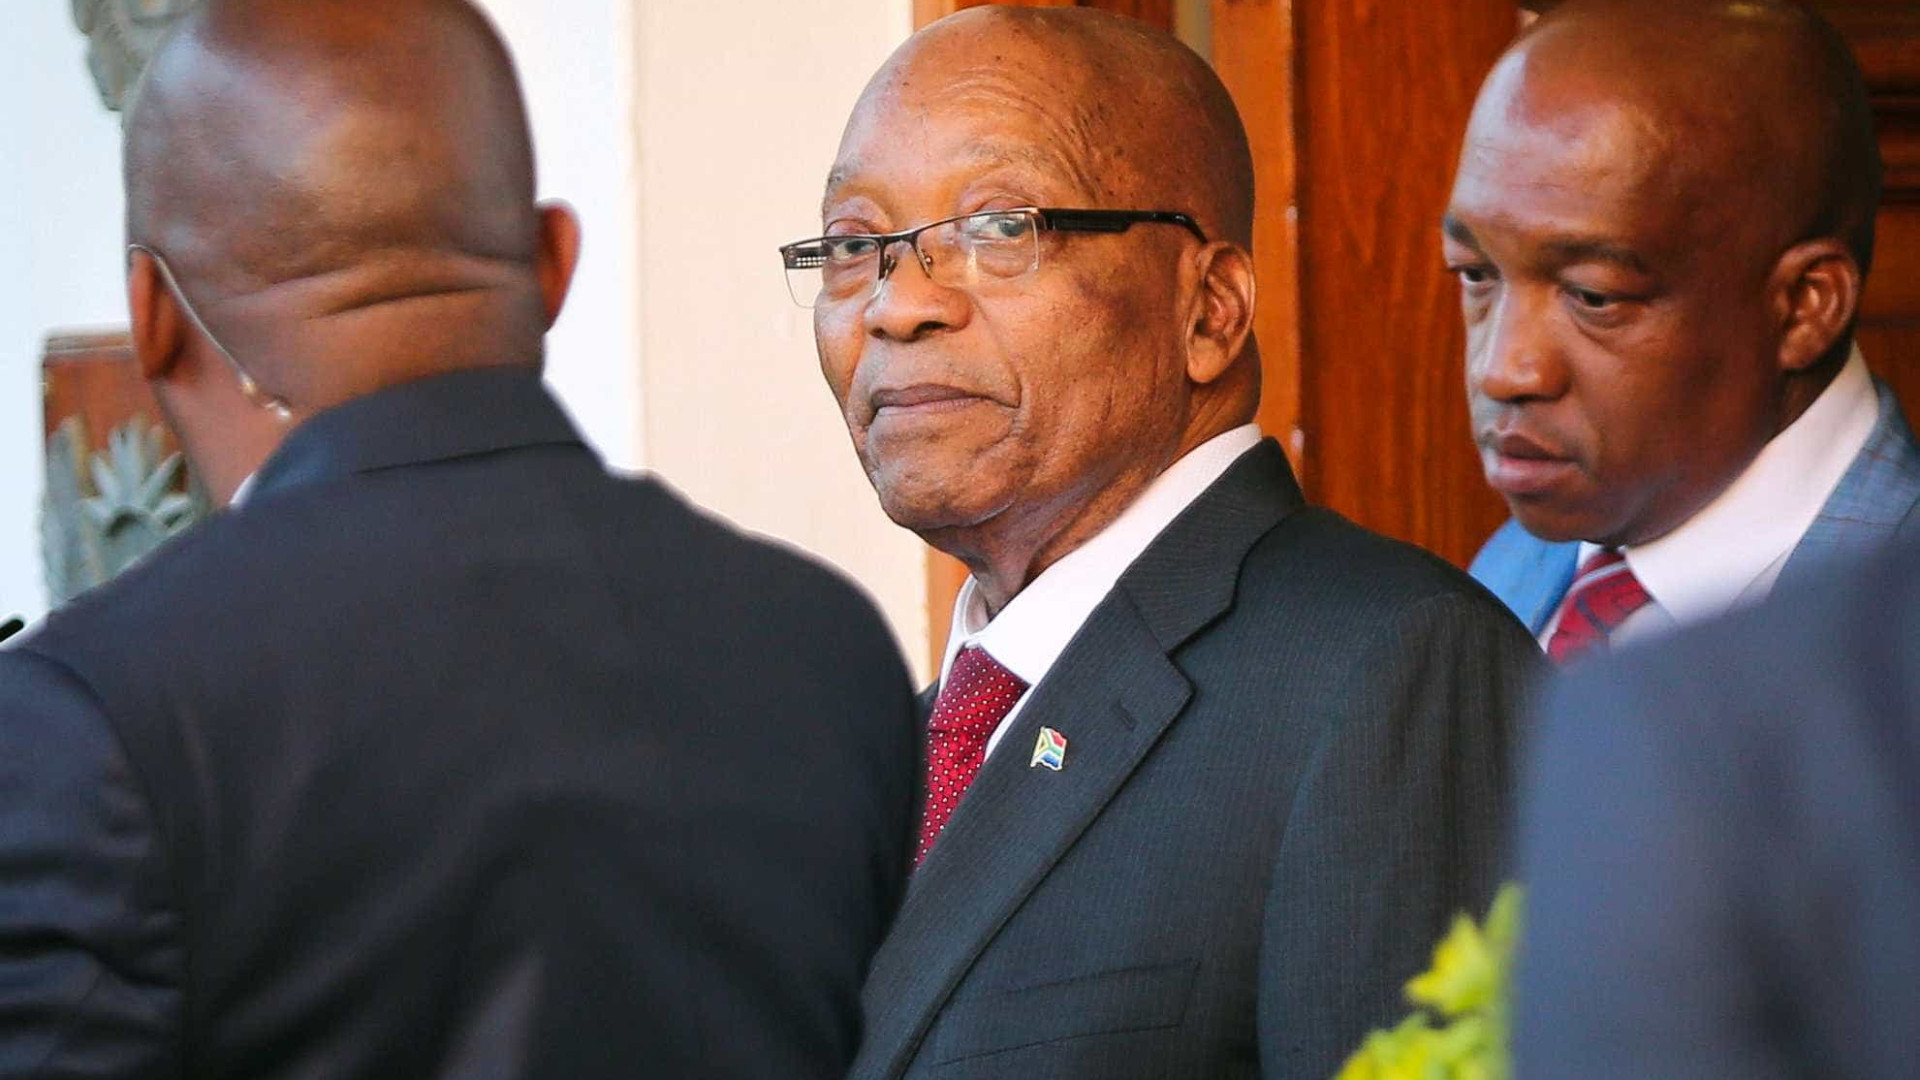 Alvo de 800 acusações, Zuma diz que pedido de renúncia é injusto